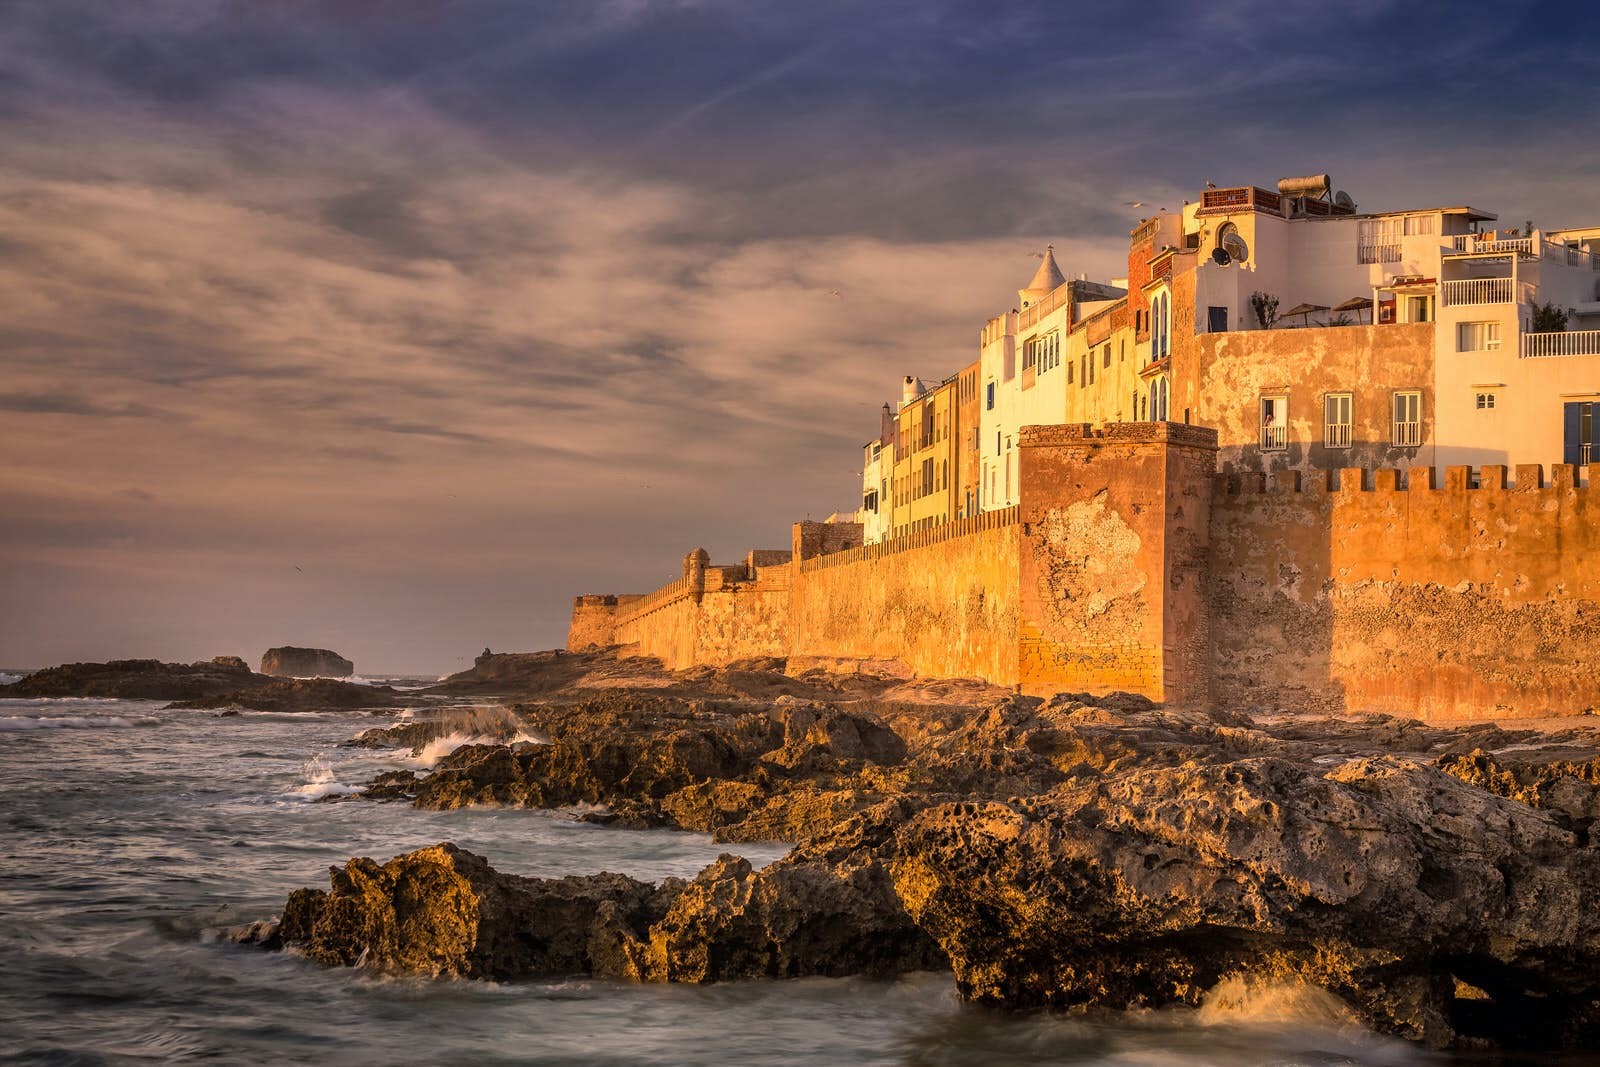 Essaouira spendendo poco:cosa vedere e dove dormire 